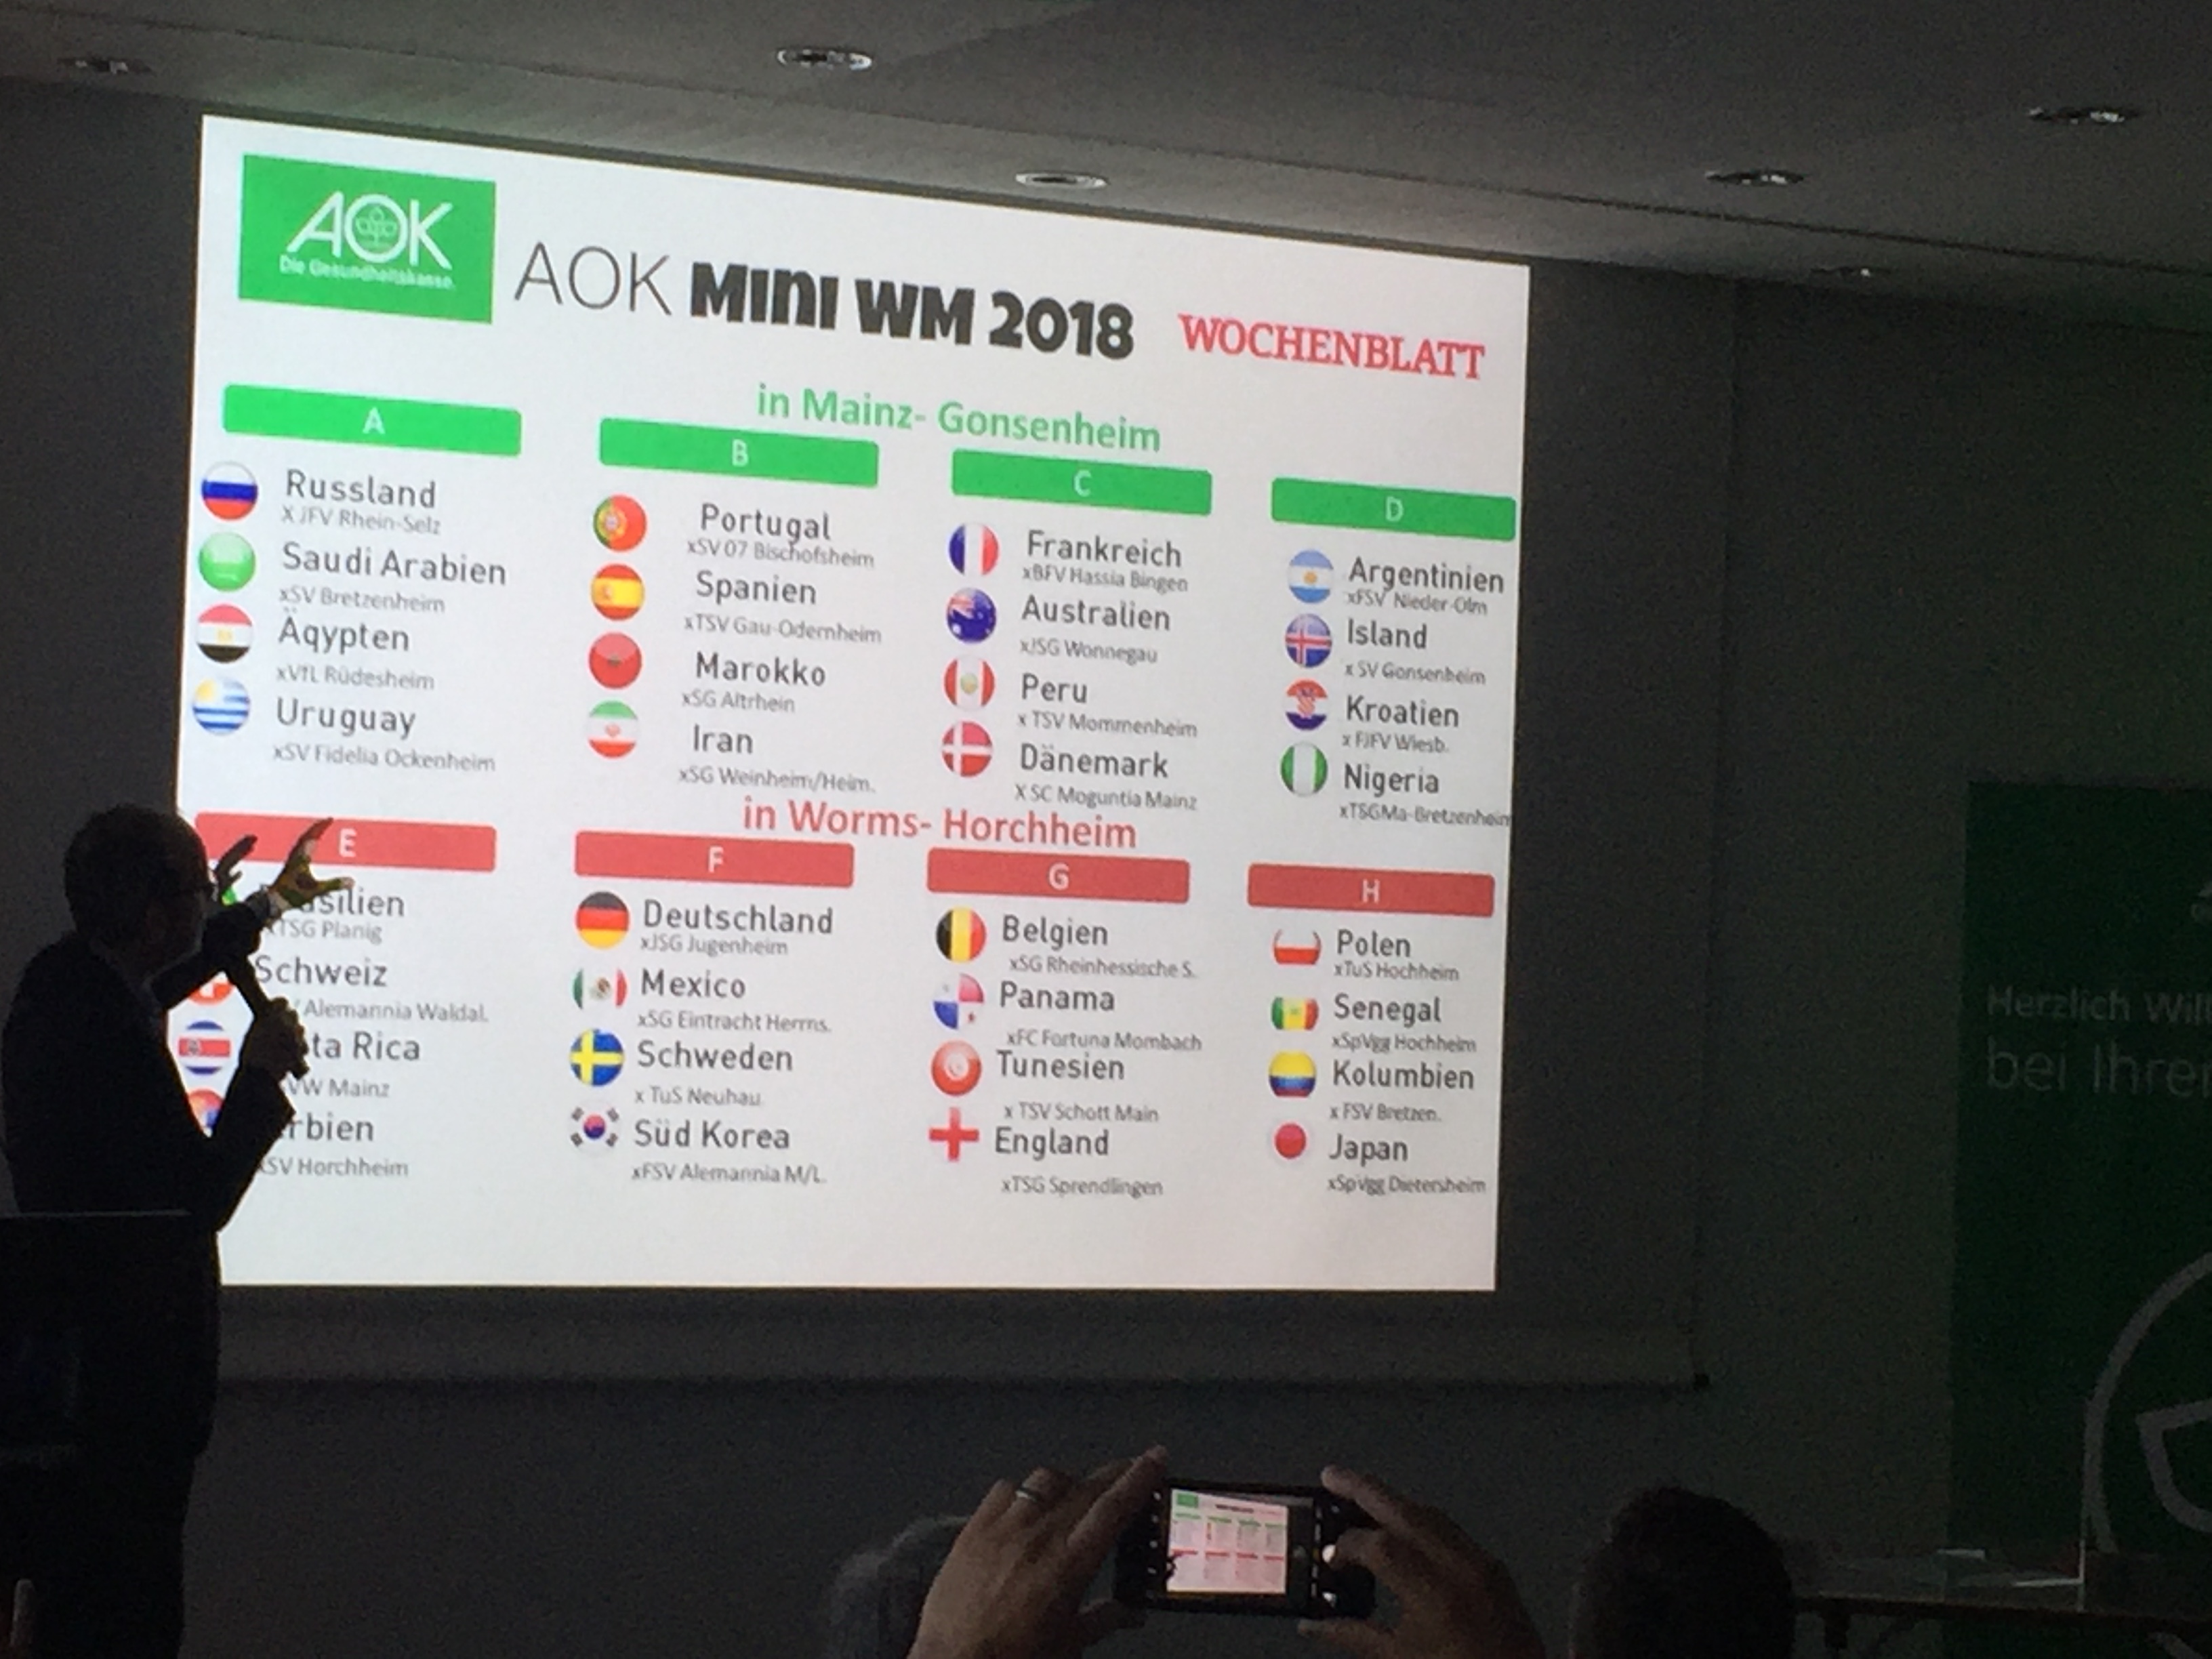 Unsere E-Jugend ist bei der AOK-Mini-WM 2018 dabei! (Update & Spielplan)